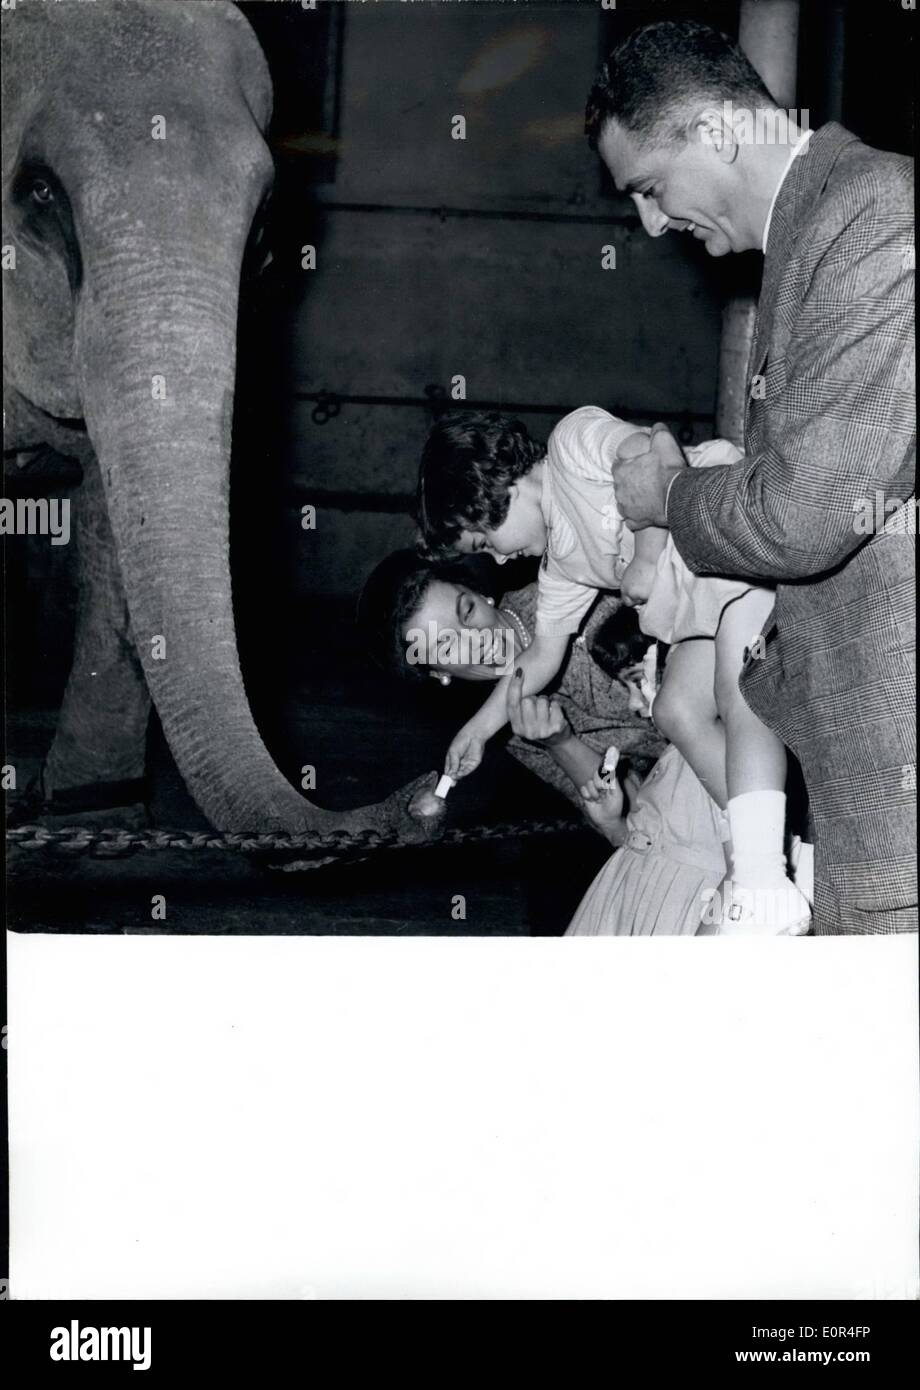 12. Dezember 1957 - Linda Christian die kleinen Töchter besuchen Zirkusvorstellung in Paris: &-Jahr alten Romina und 4-j hrige Taryn, Töchter von Linda Christian und Tyrone Power, besuchte eine Zirkusvorstellung am Medrano. Foto zeigt Linda und ihren beiden kleinen Töchtern Zucker in den Zirkus Elefanten füttern. Auf richtige Senor Pinatari, brasilianischer industrieller, an denen Linda gemeldet wird, Negaged zu sein. Stockfoto